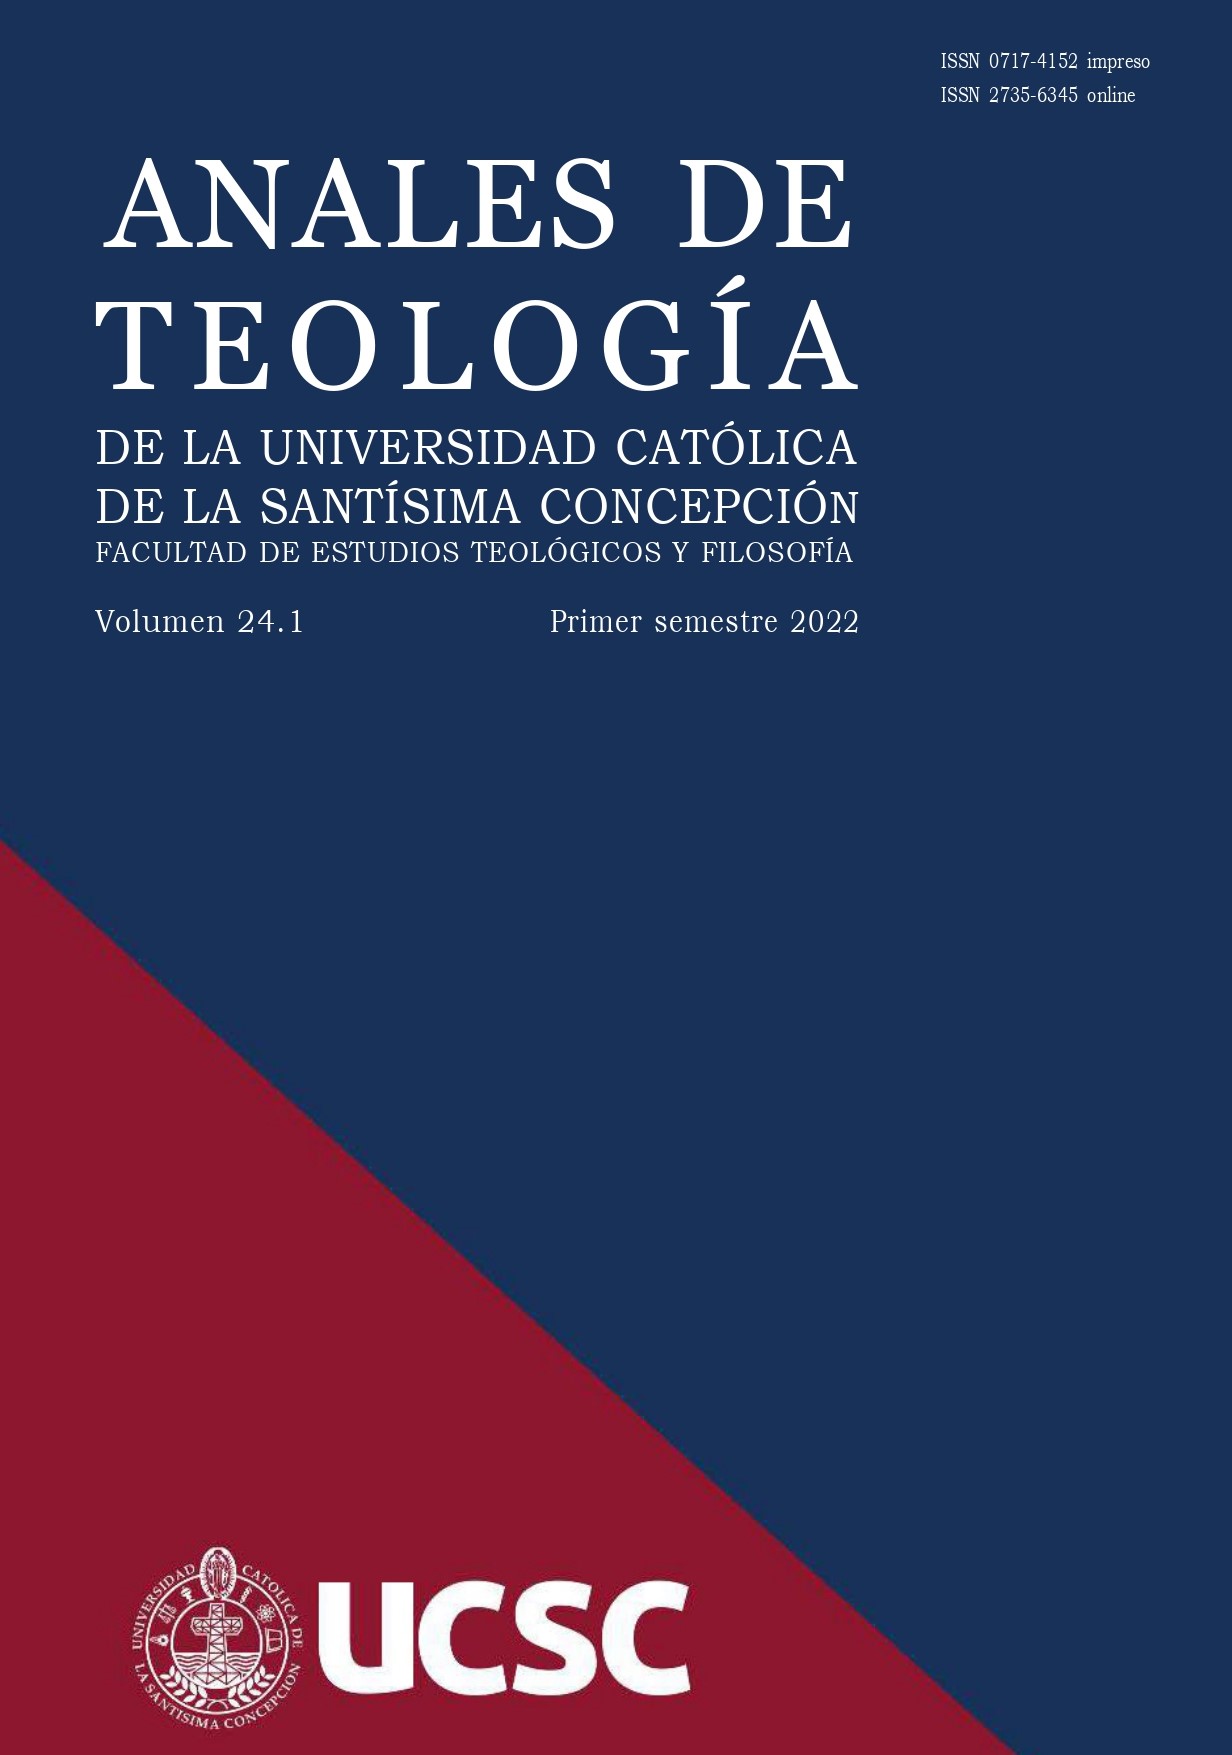 					View Vol. 21 No. 1 (2019): Anales de Teología | Enero - Junio 2019
				